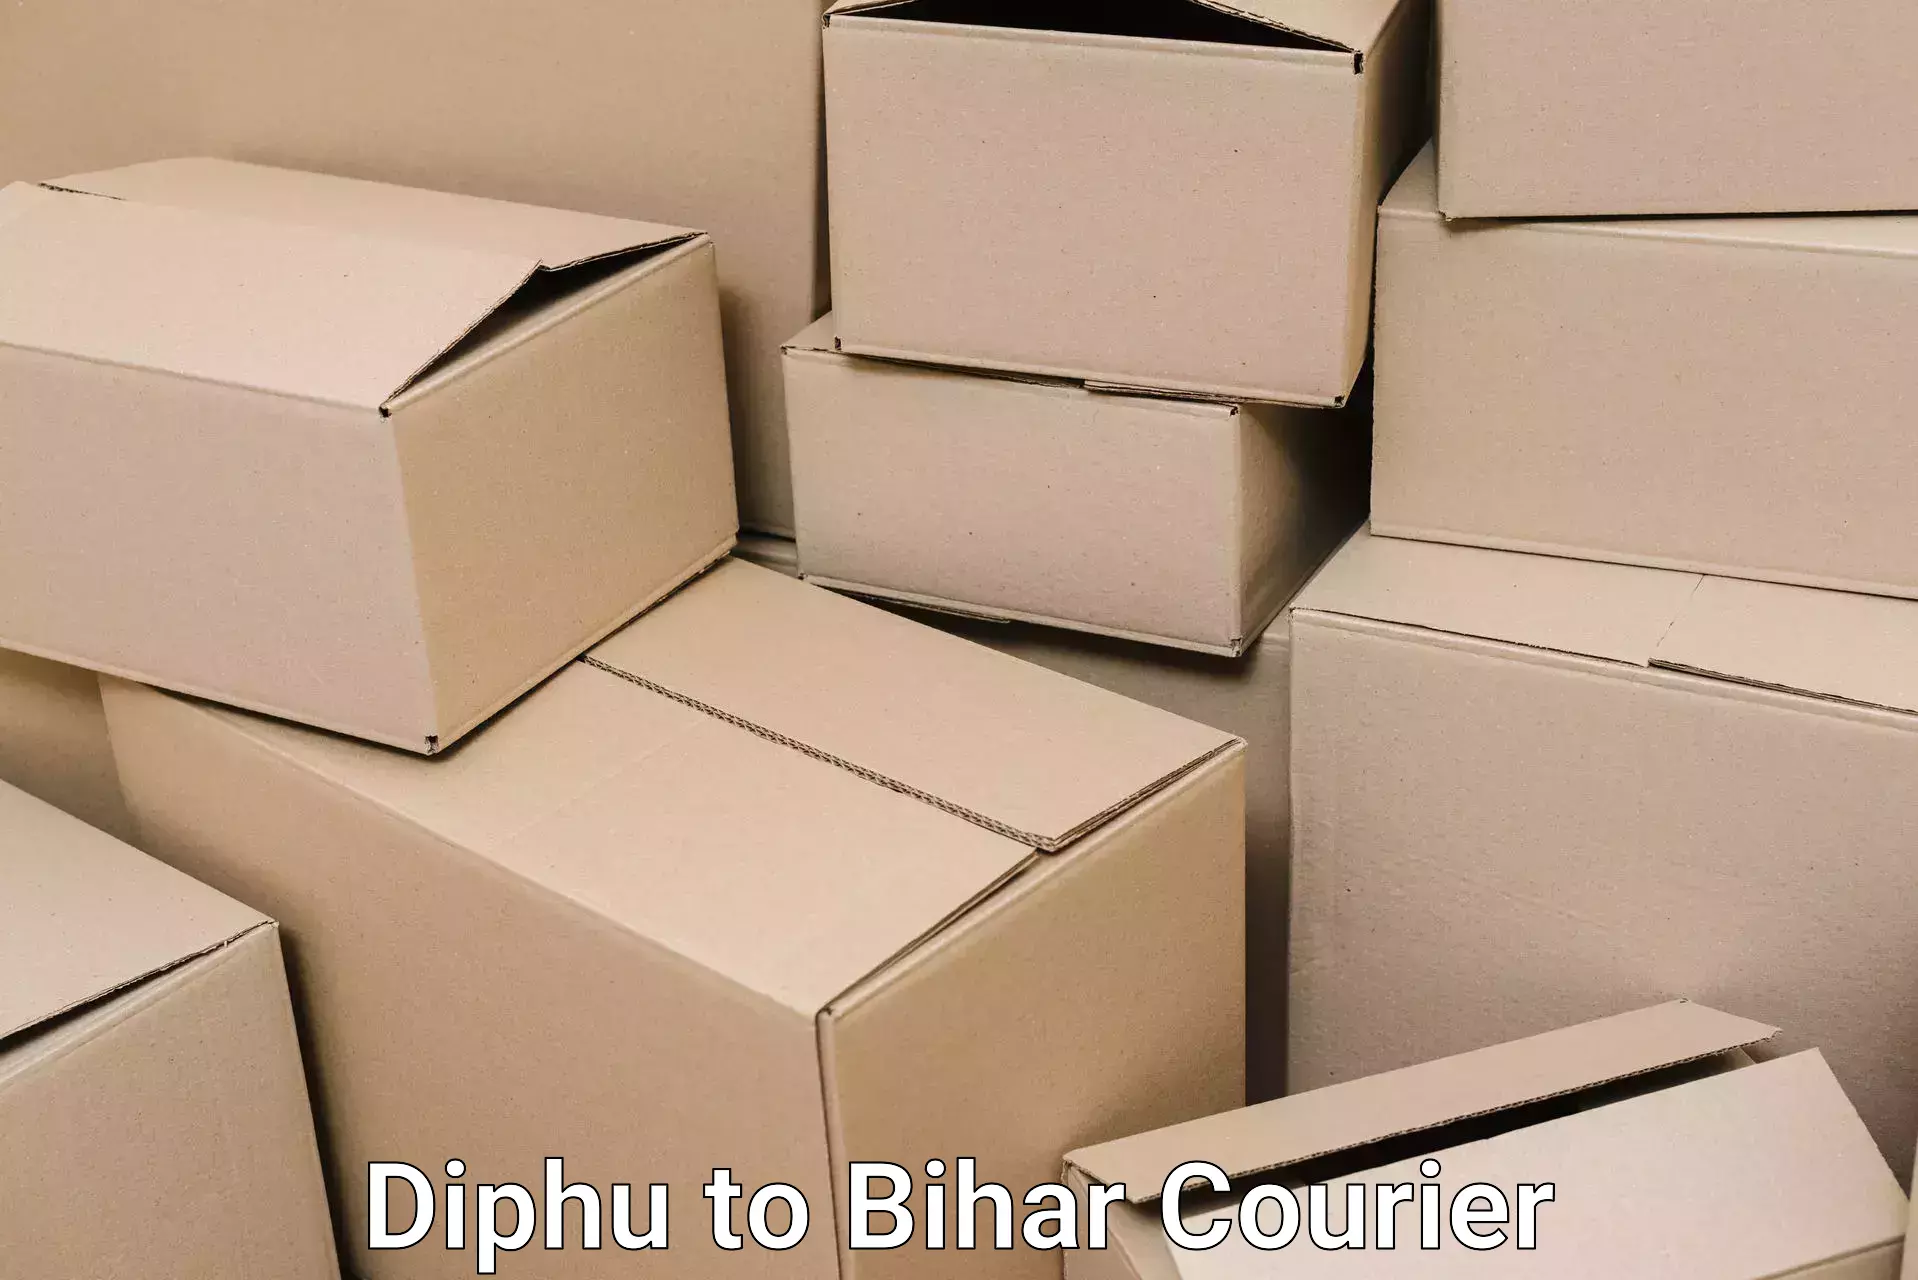 Stress-free household moving Diphu to Alamnagar